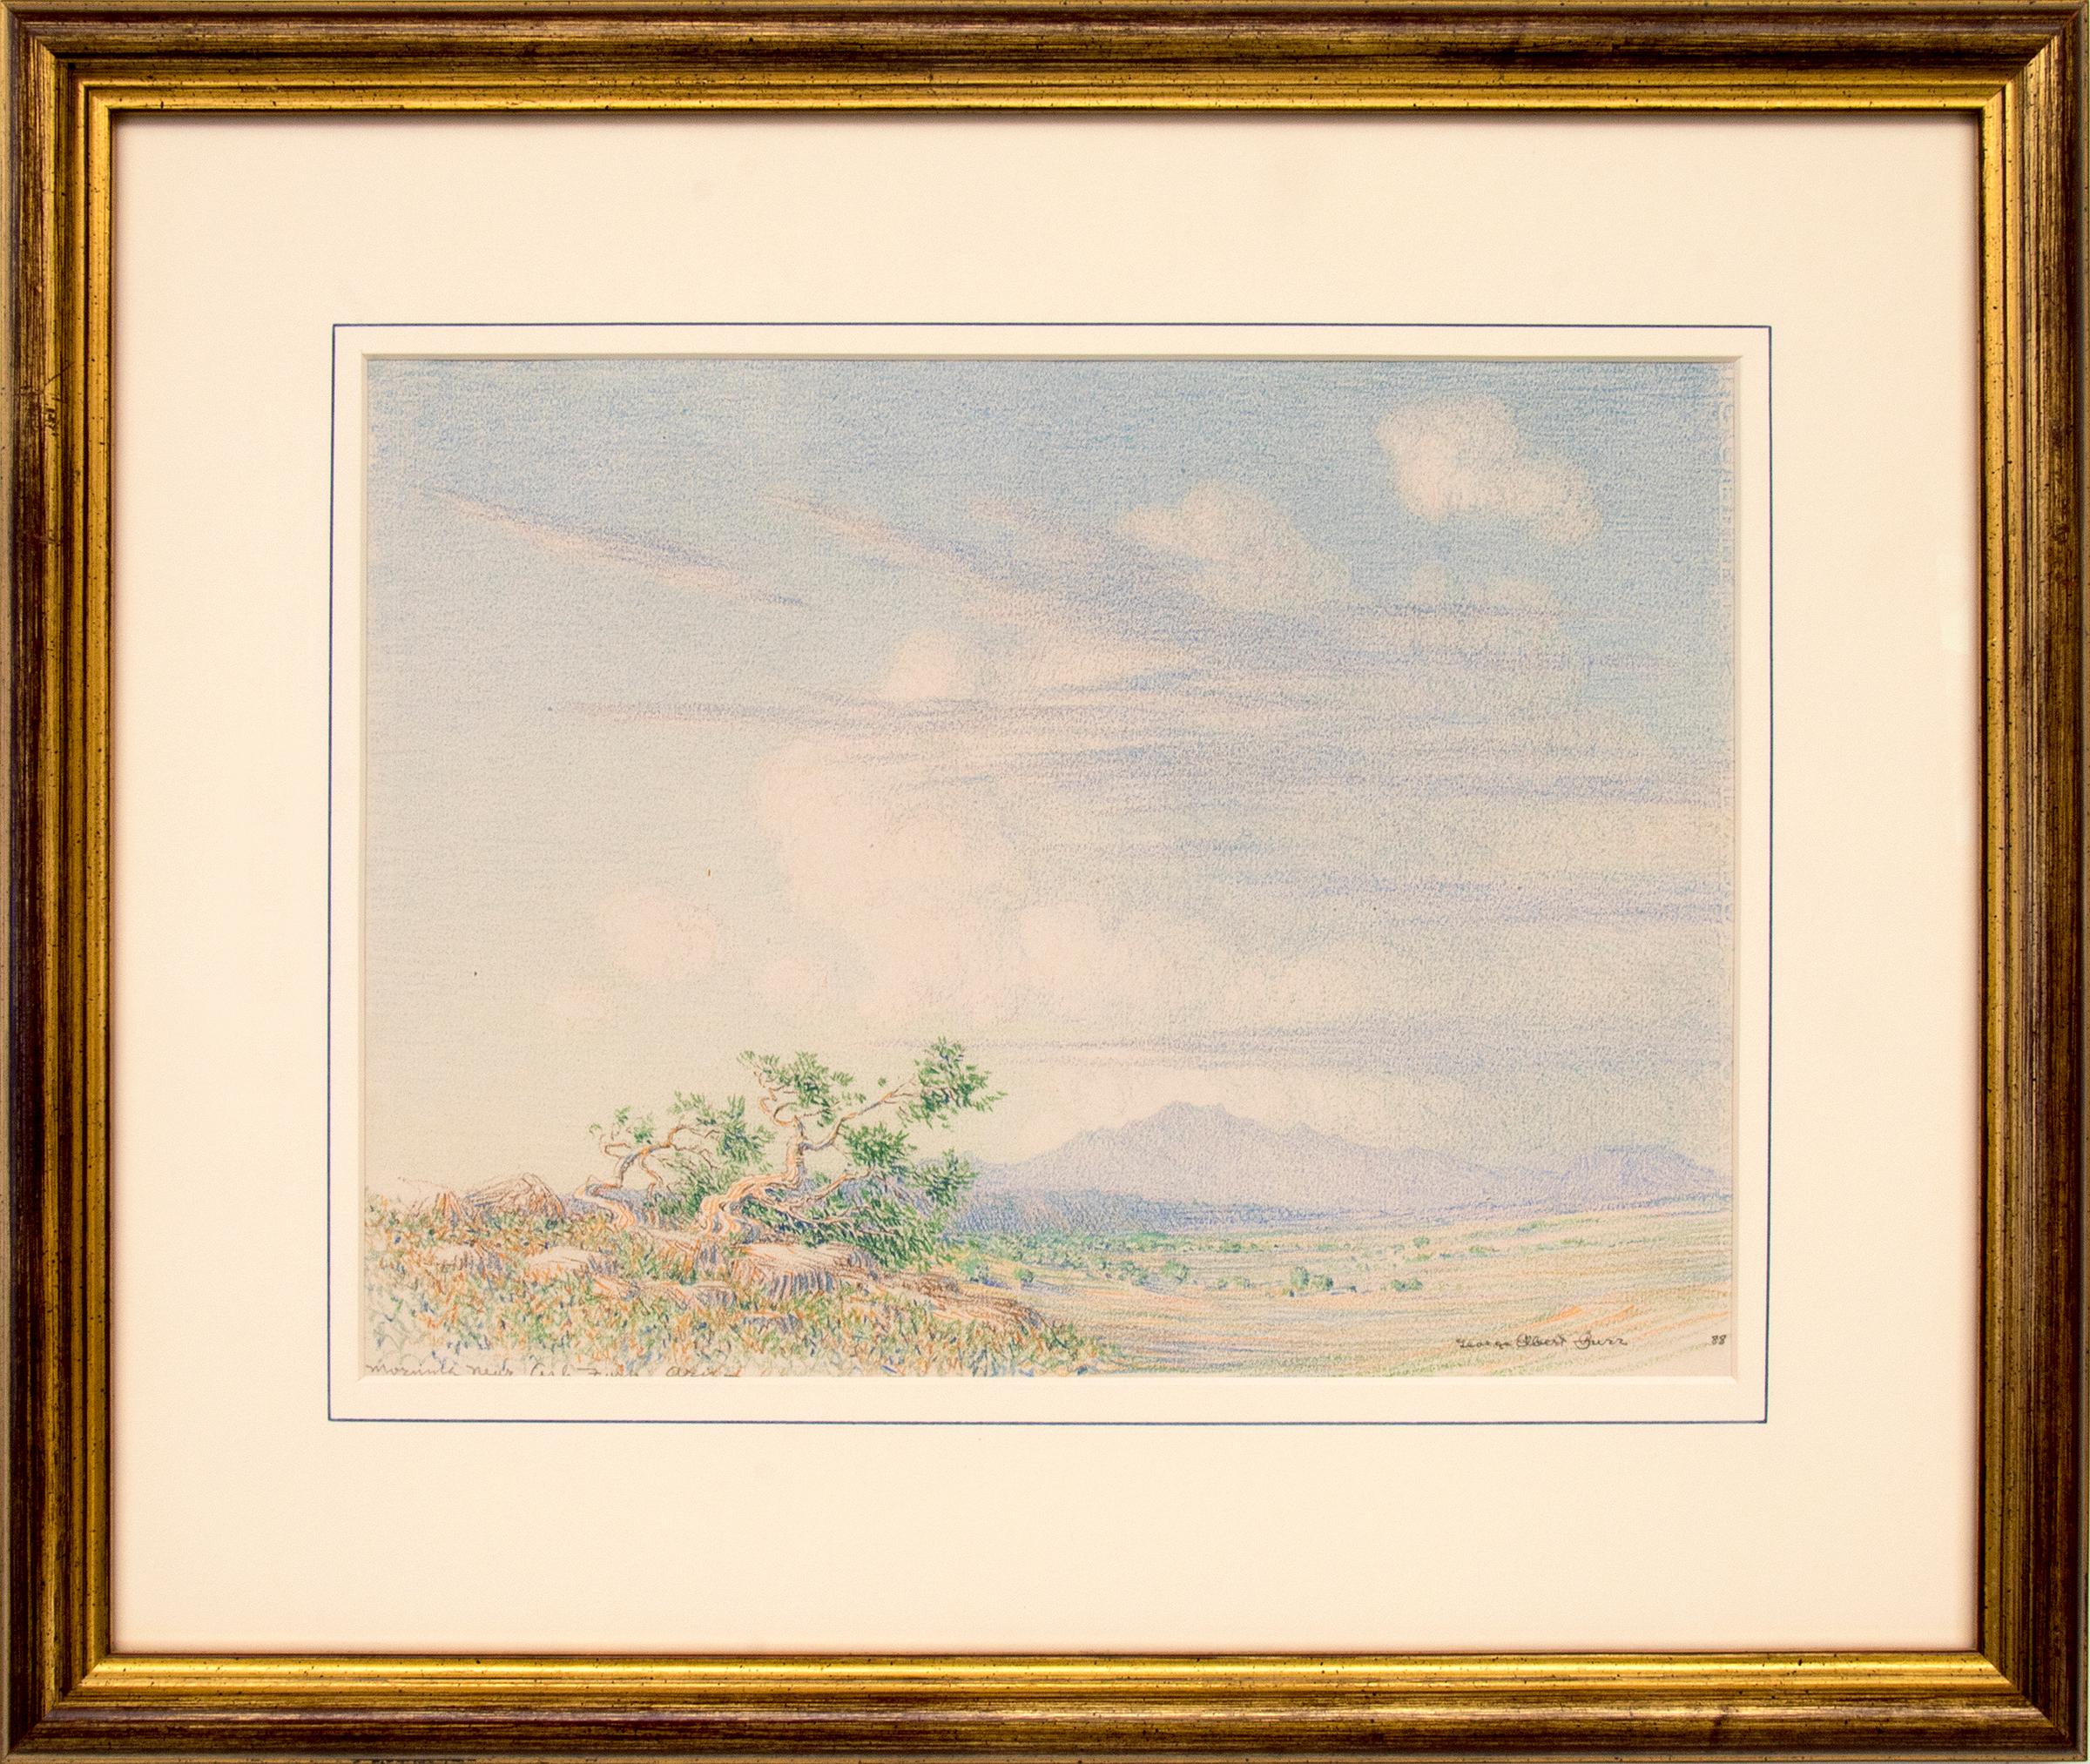 Morning Near Arizona, dessin de paysage du sud-ouest du désert des années 1880